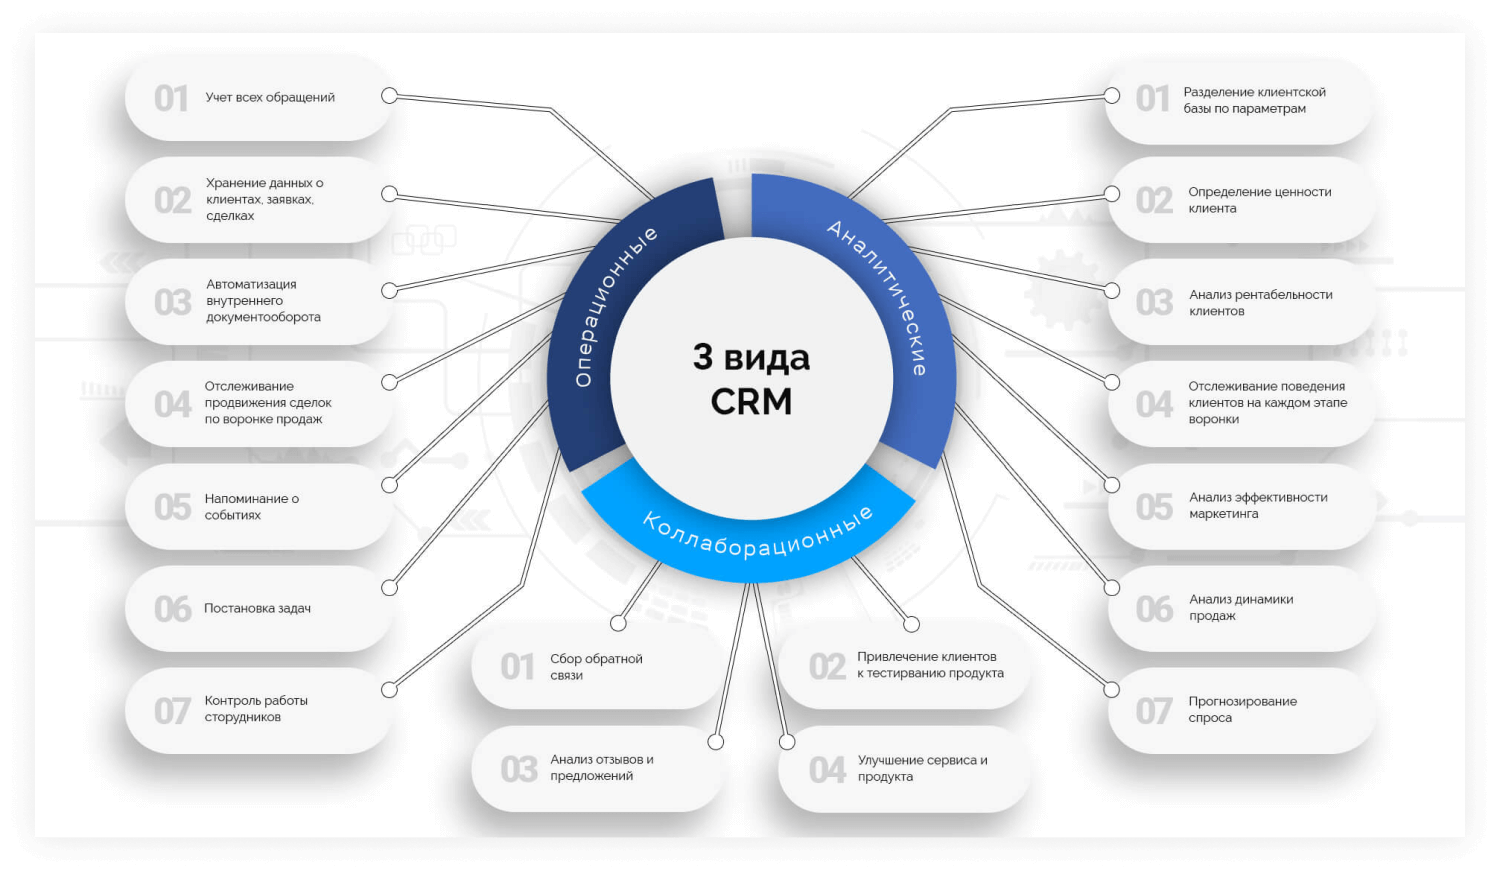 Учет заказчиков. Функциональная схема CRM системы. CRM системы управления взаимоотношениями с клиентами. Стратегическая схема CRM. Этапы внедрения CRM системы.